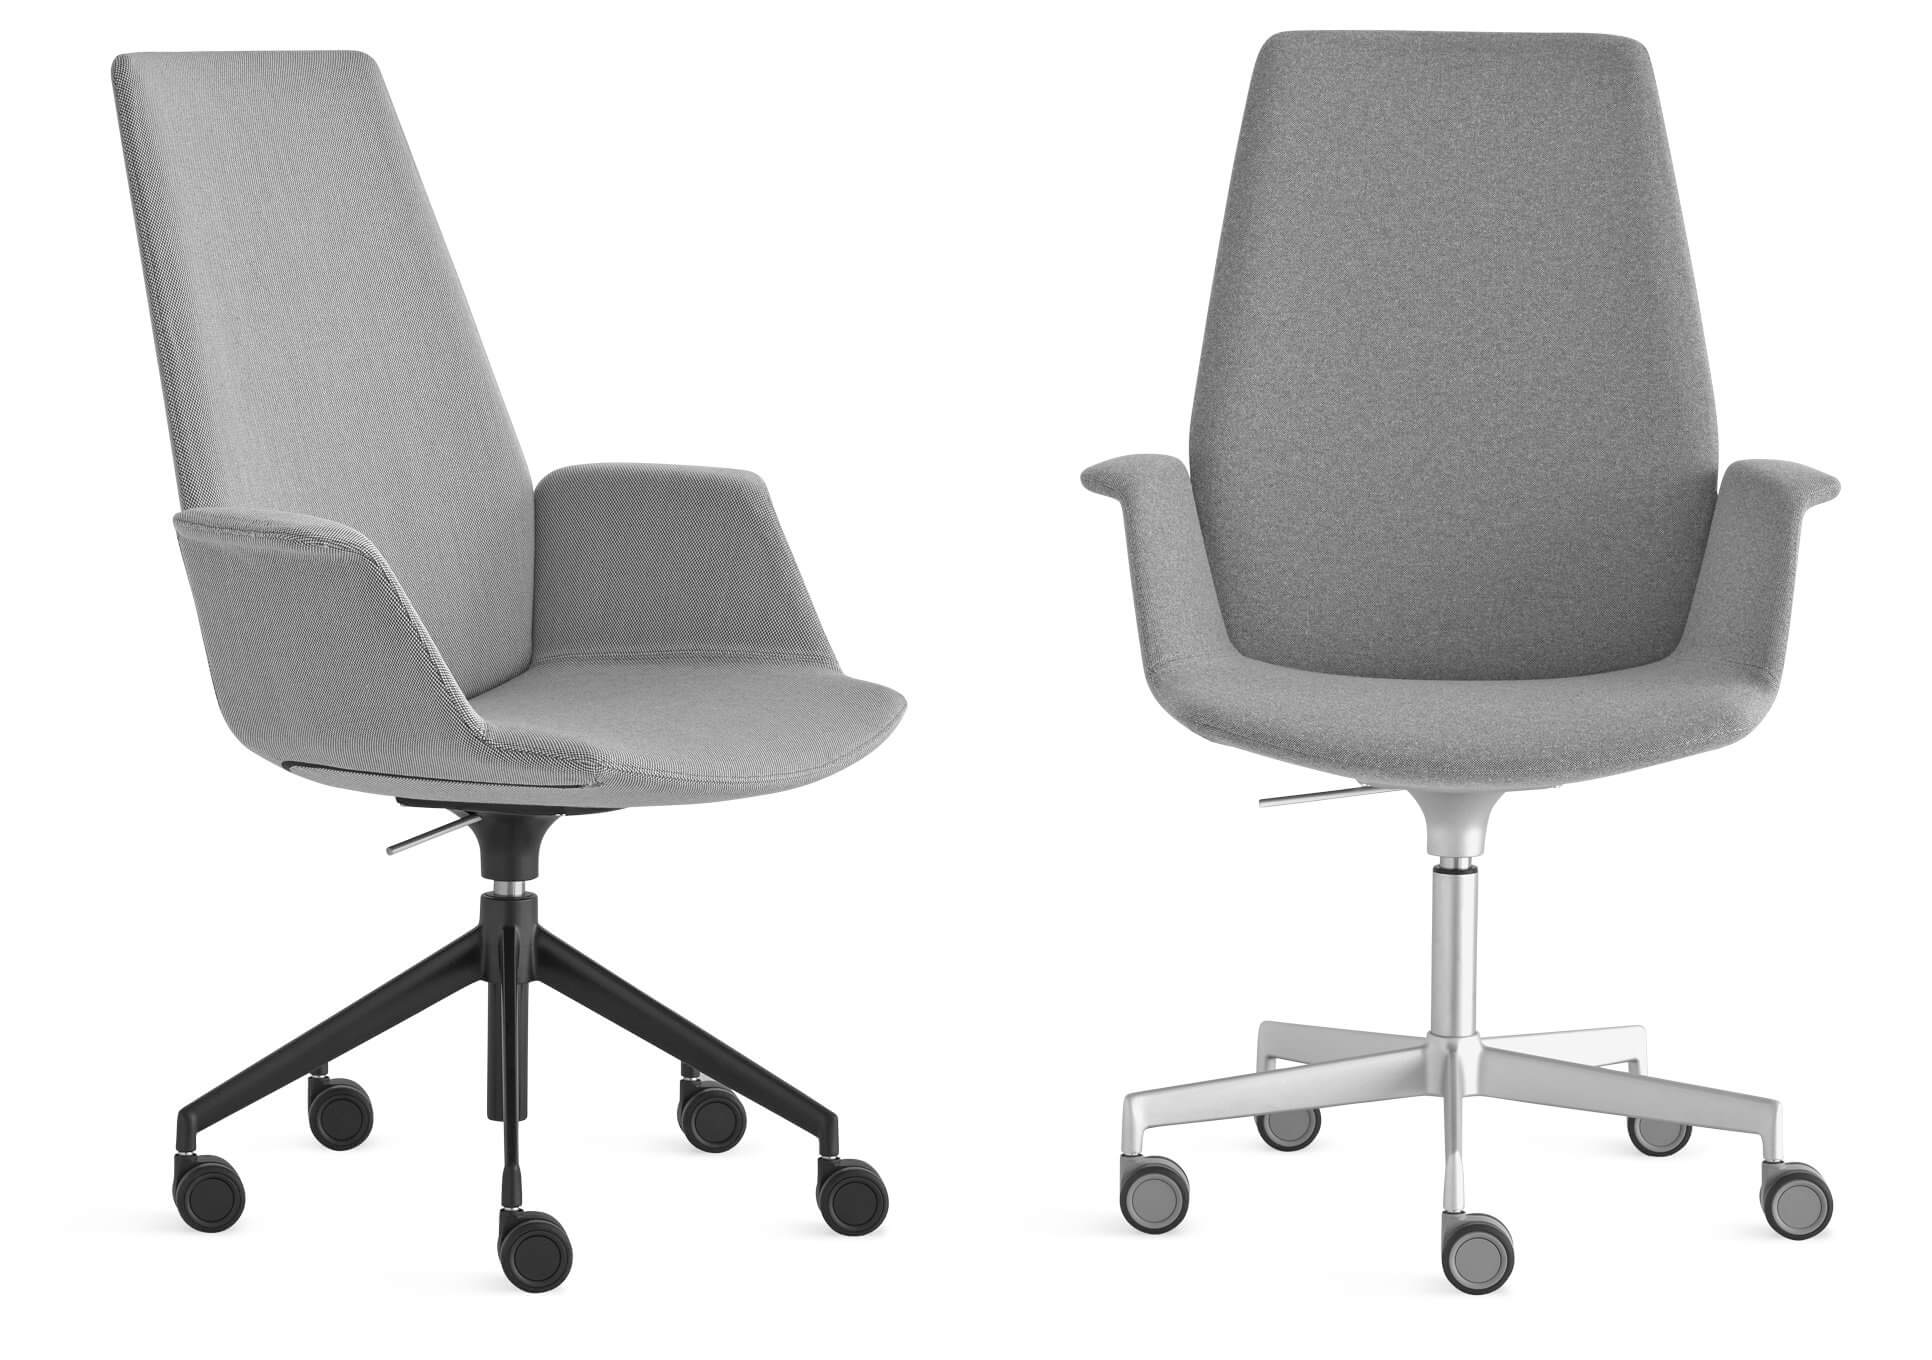 Fauteuil de Direction KlöberConnex2 HB, fauteuil de conférence design.